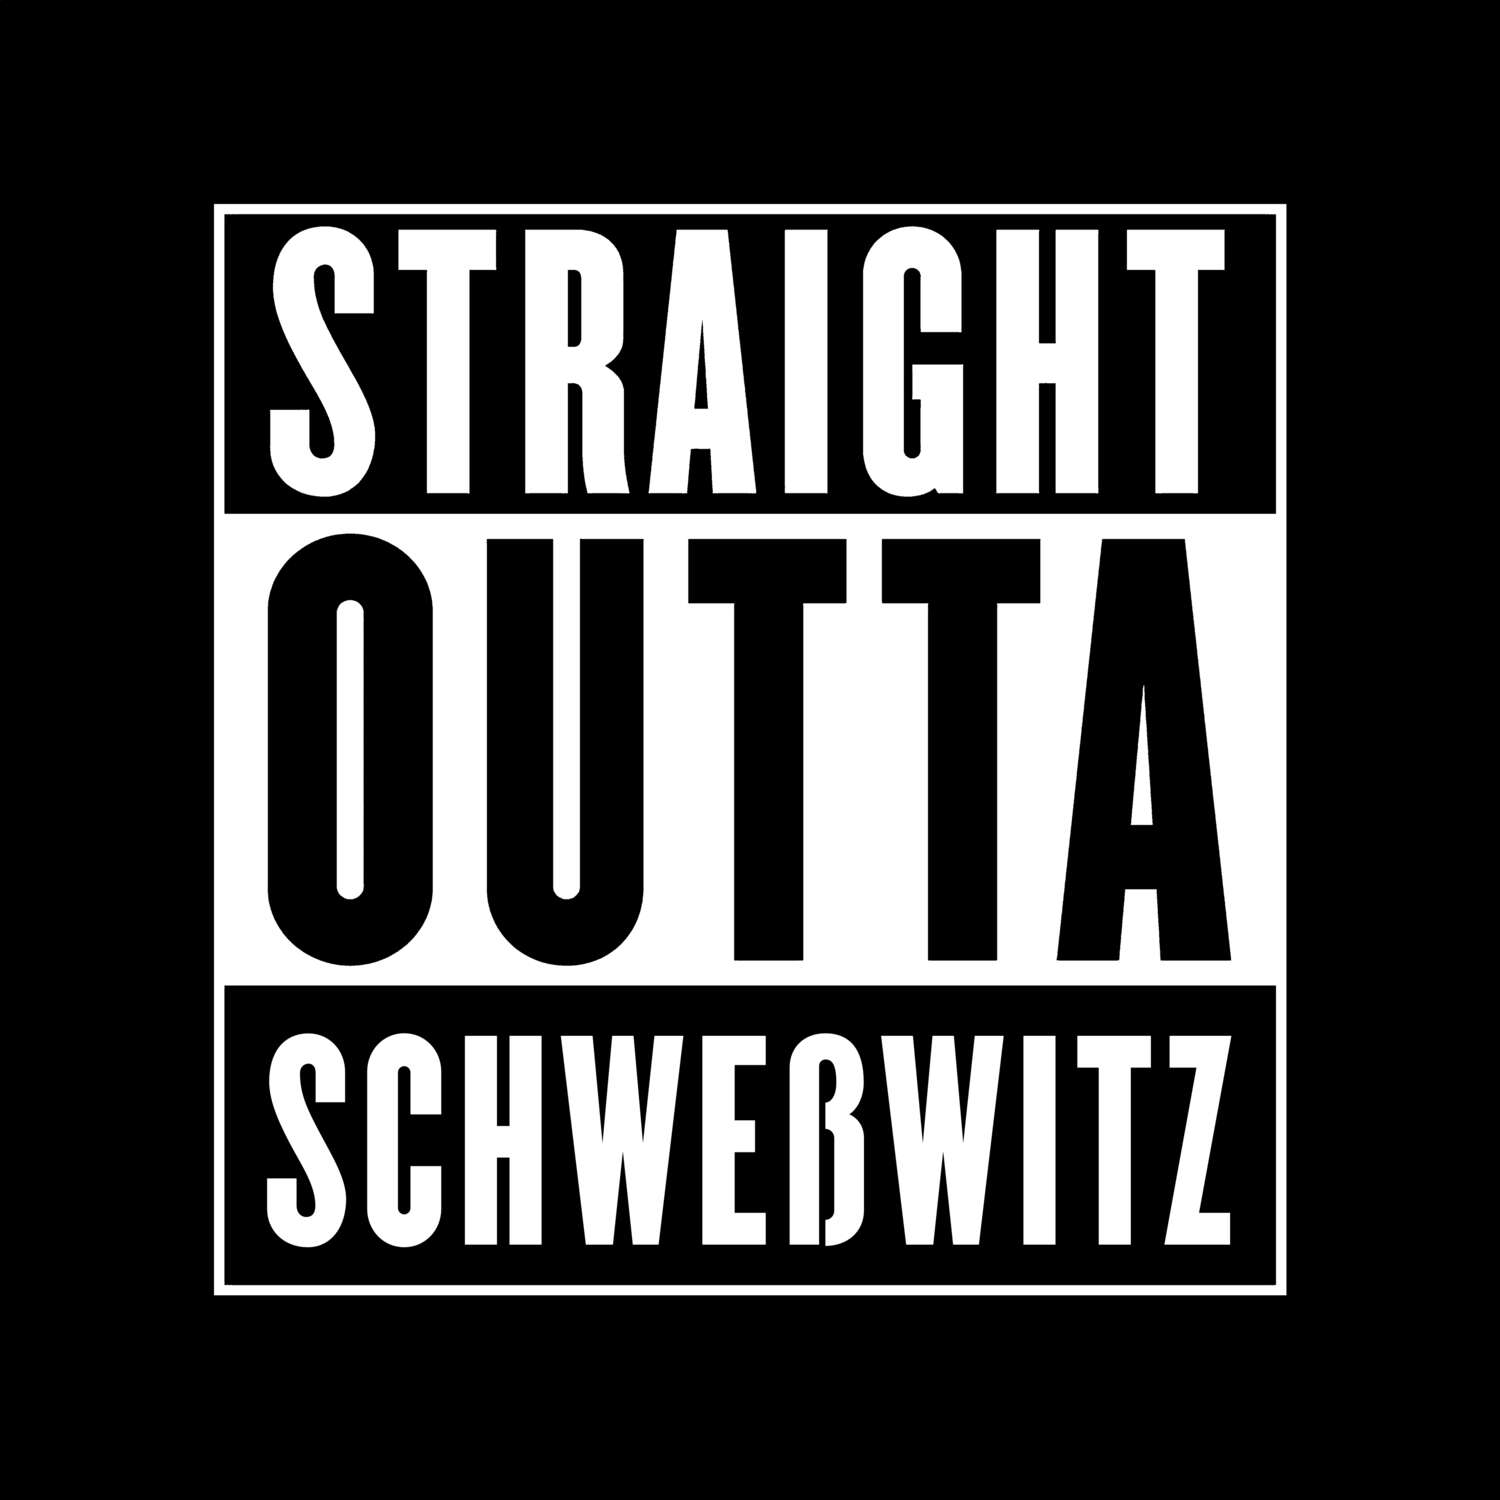 Schweßwitz T-Shirt »Straight Outta«